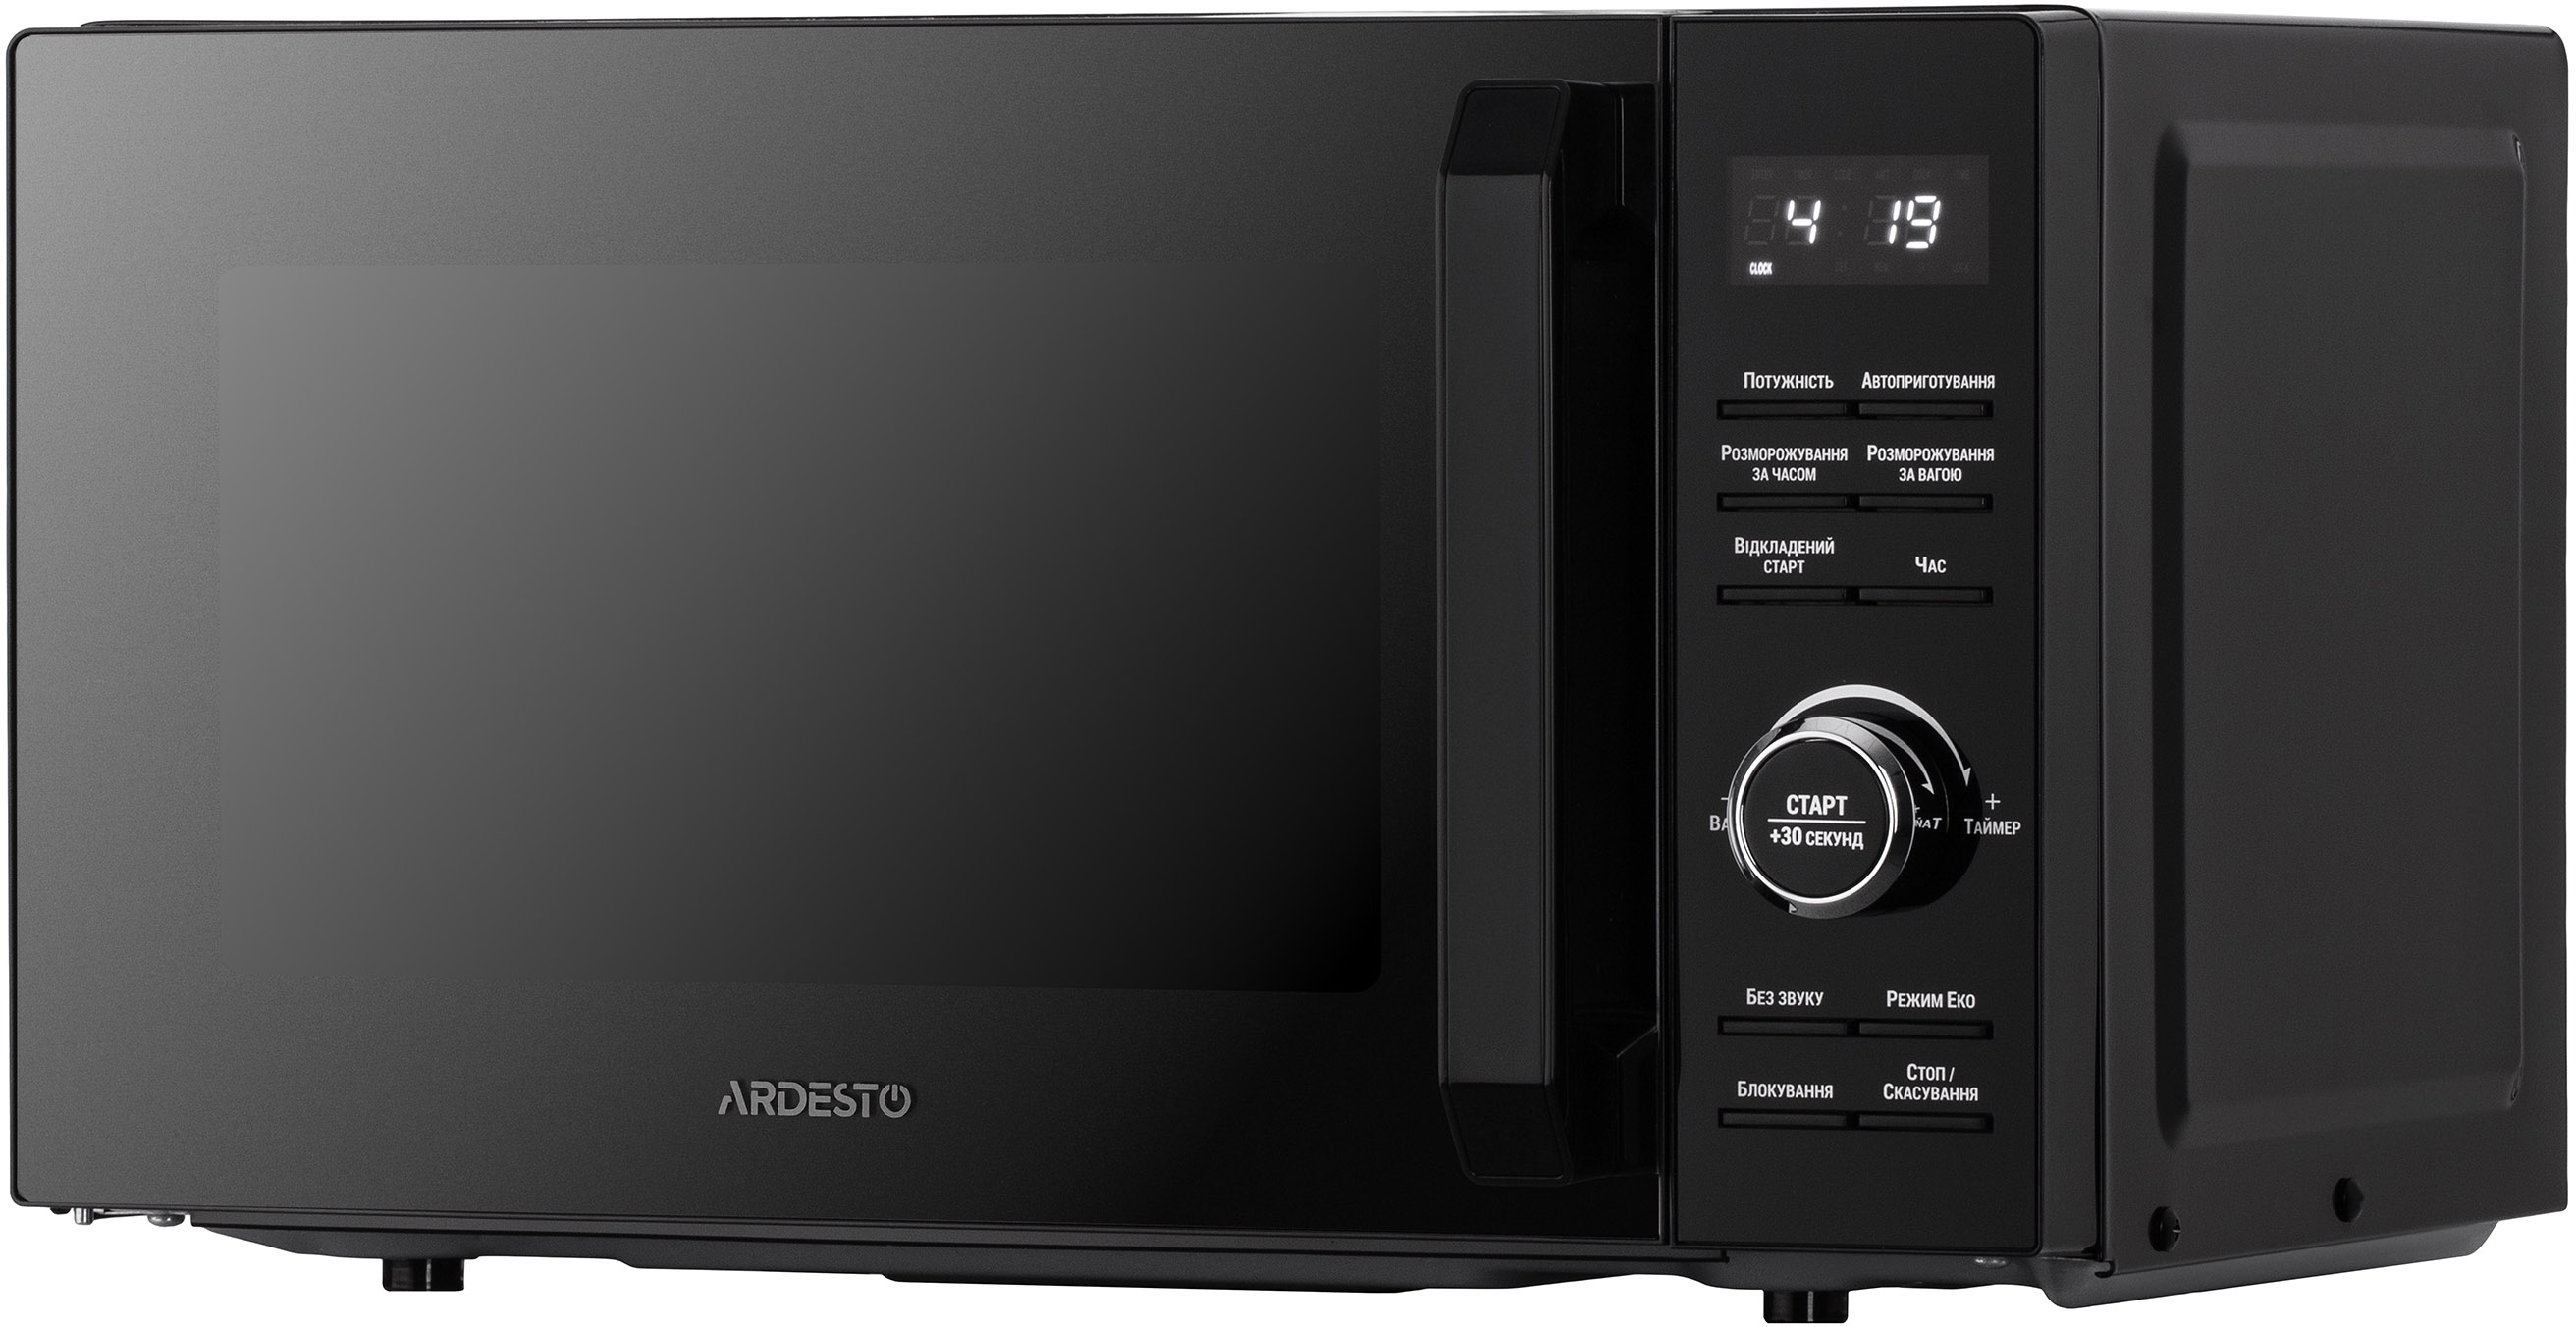 Микроволновая печь Ardesto GO-E745GB в интернет-магазине, главное фото